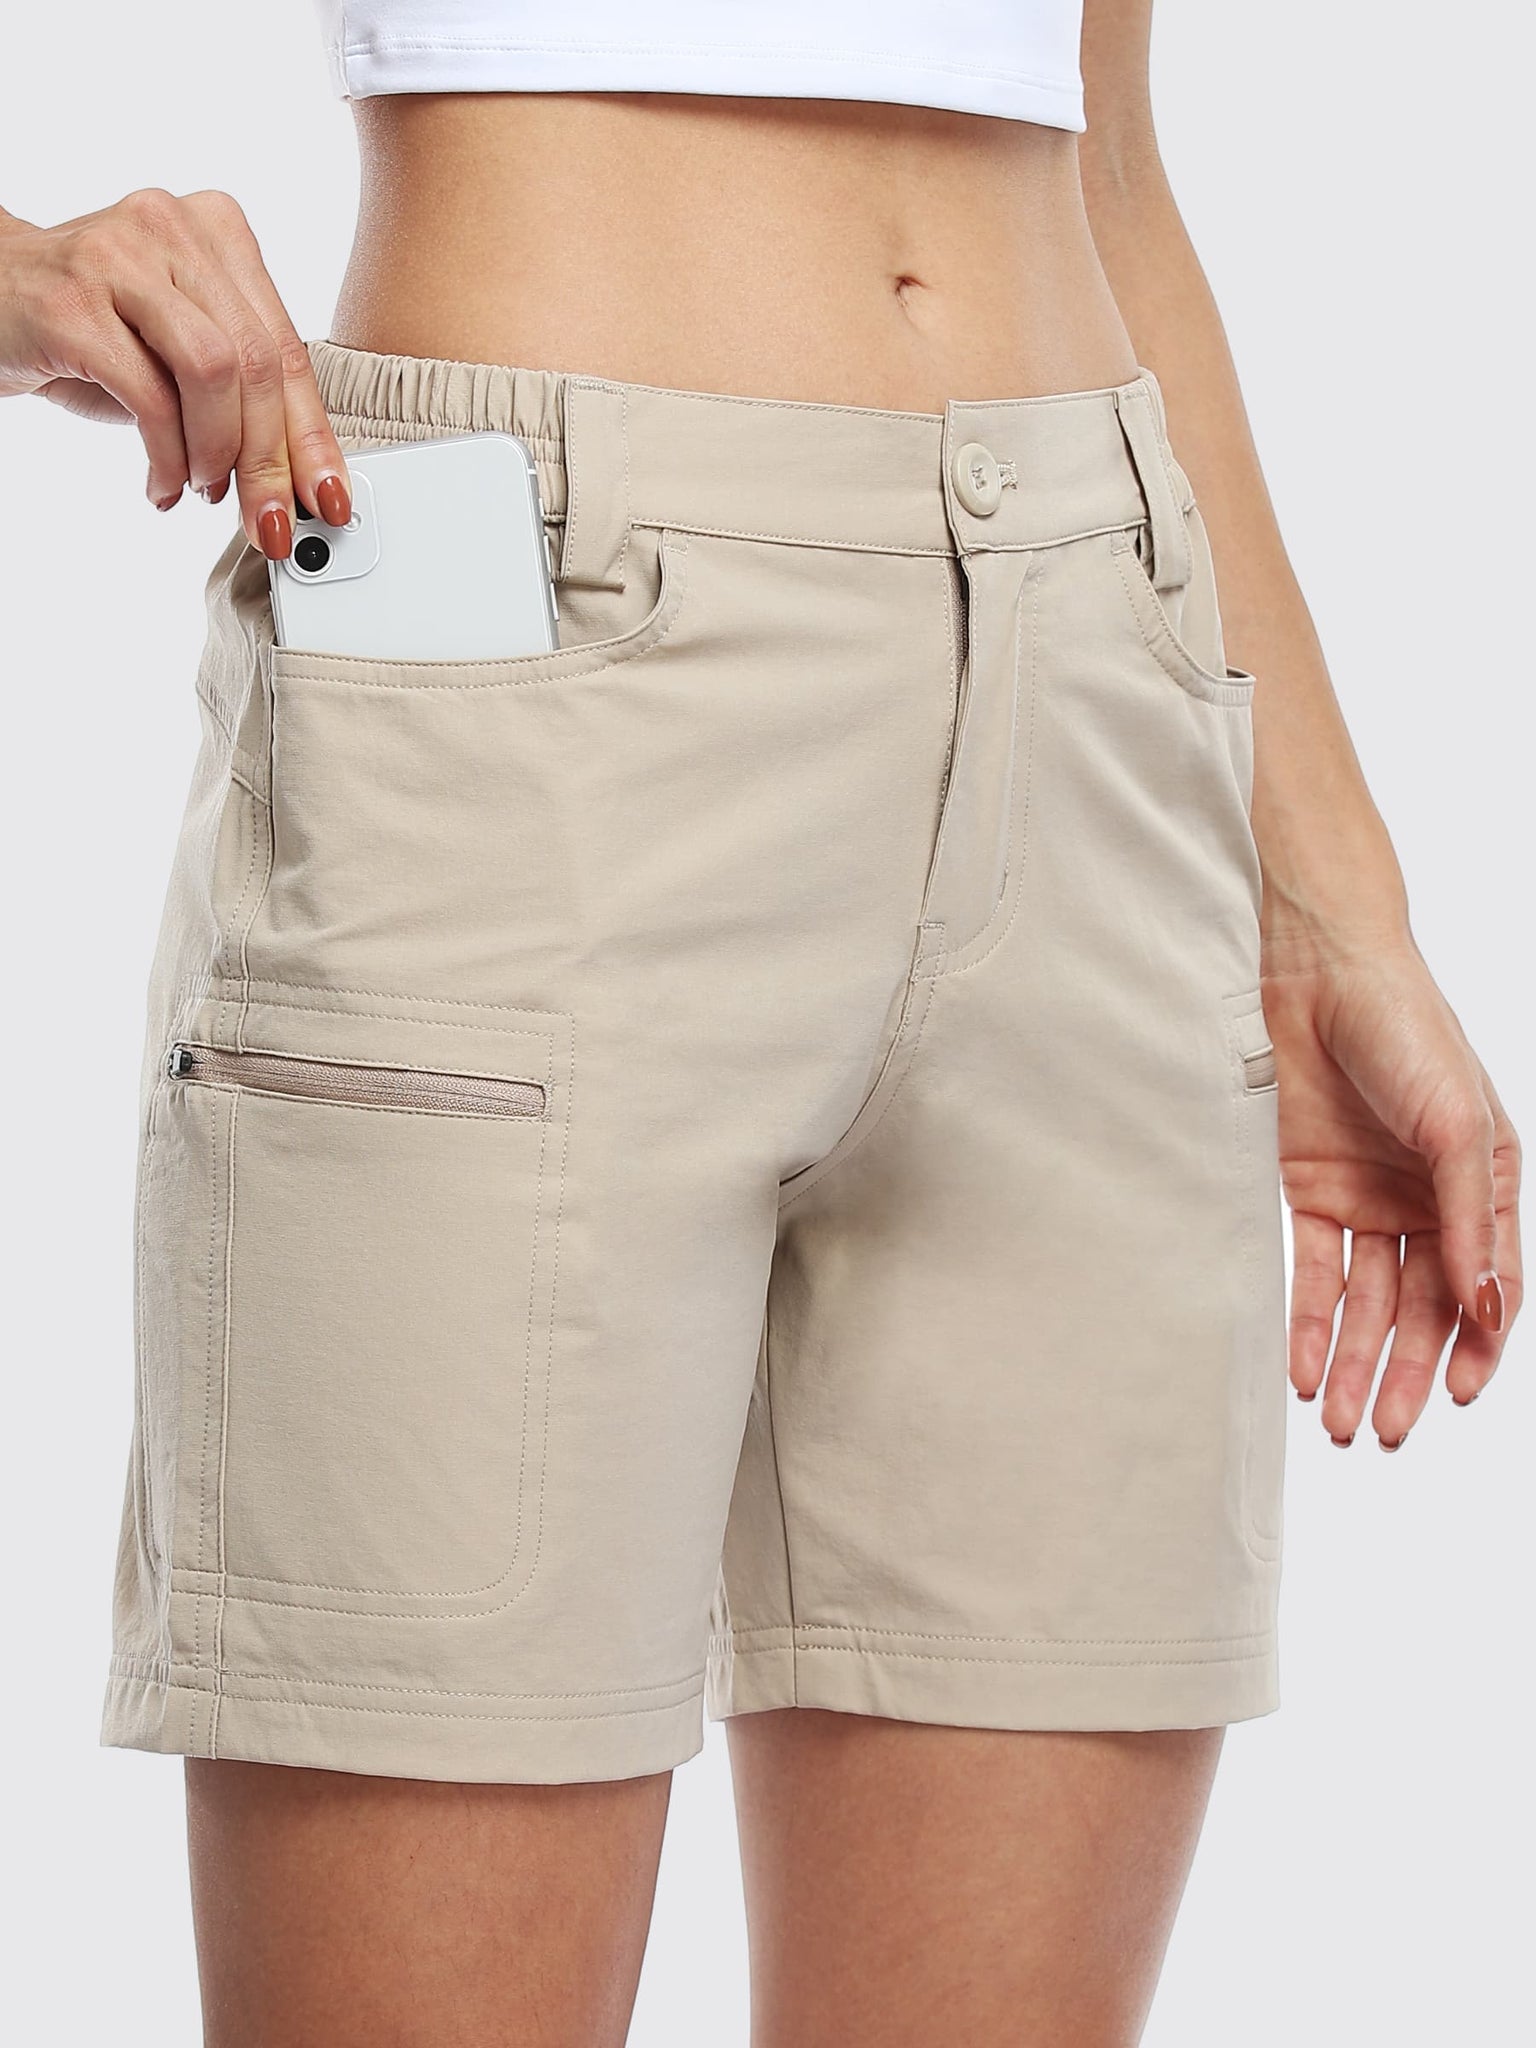 Willit Women's Outdoor Cargo Shorts 6 Inseam_Khaki_model3